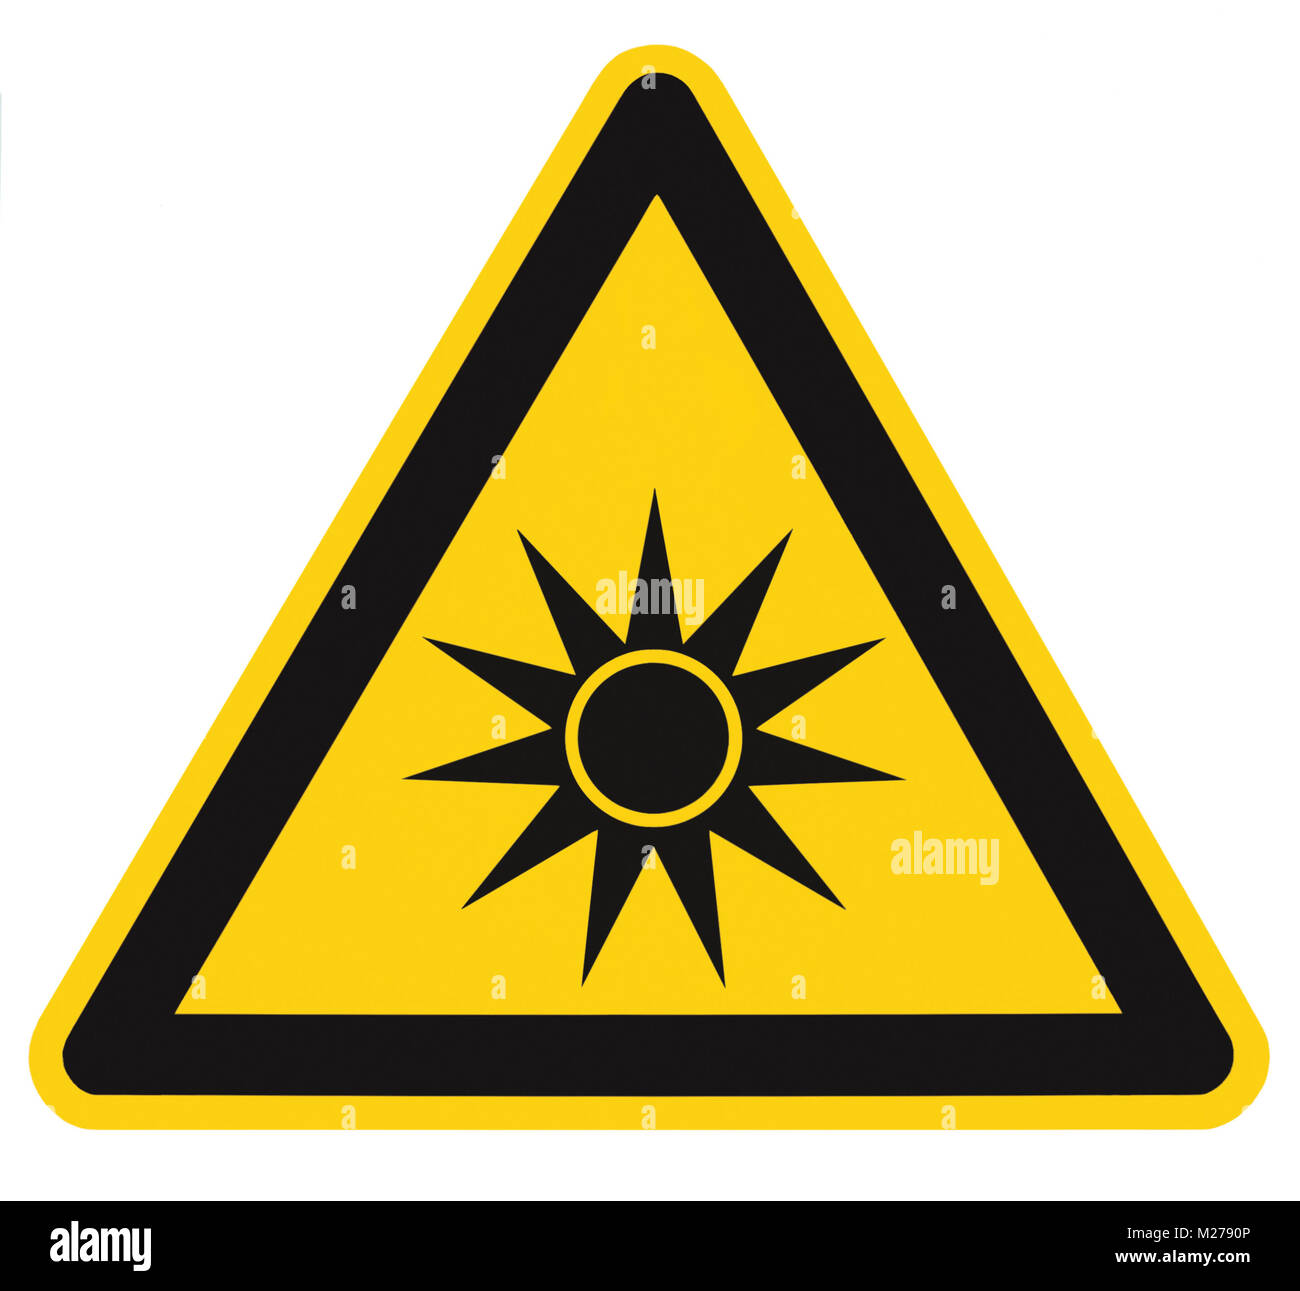 Risque de radiation optique sécurité attention danger avertissement signe texte label autocollant, faisceau de lumière artificielle symbole icône isolé, triangle noir sur jaune Banque D'Images